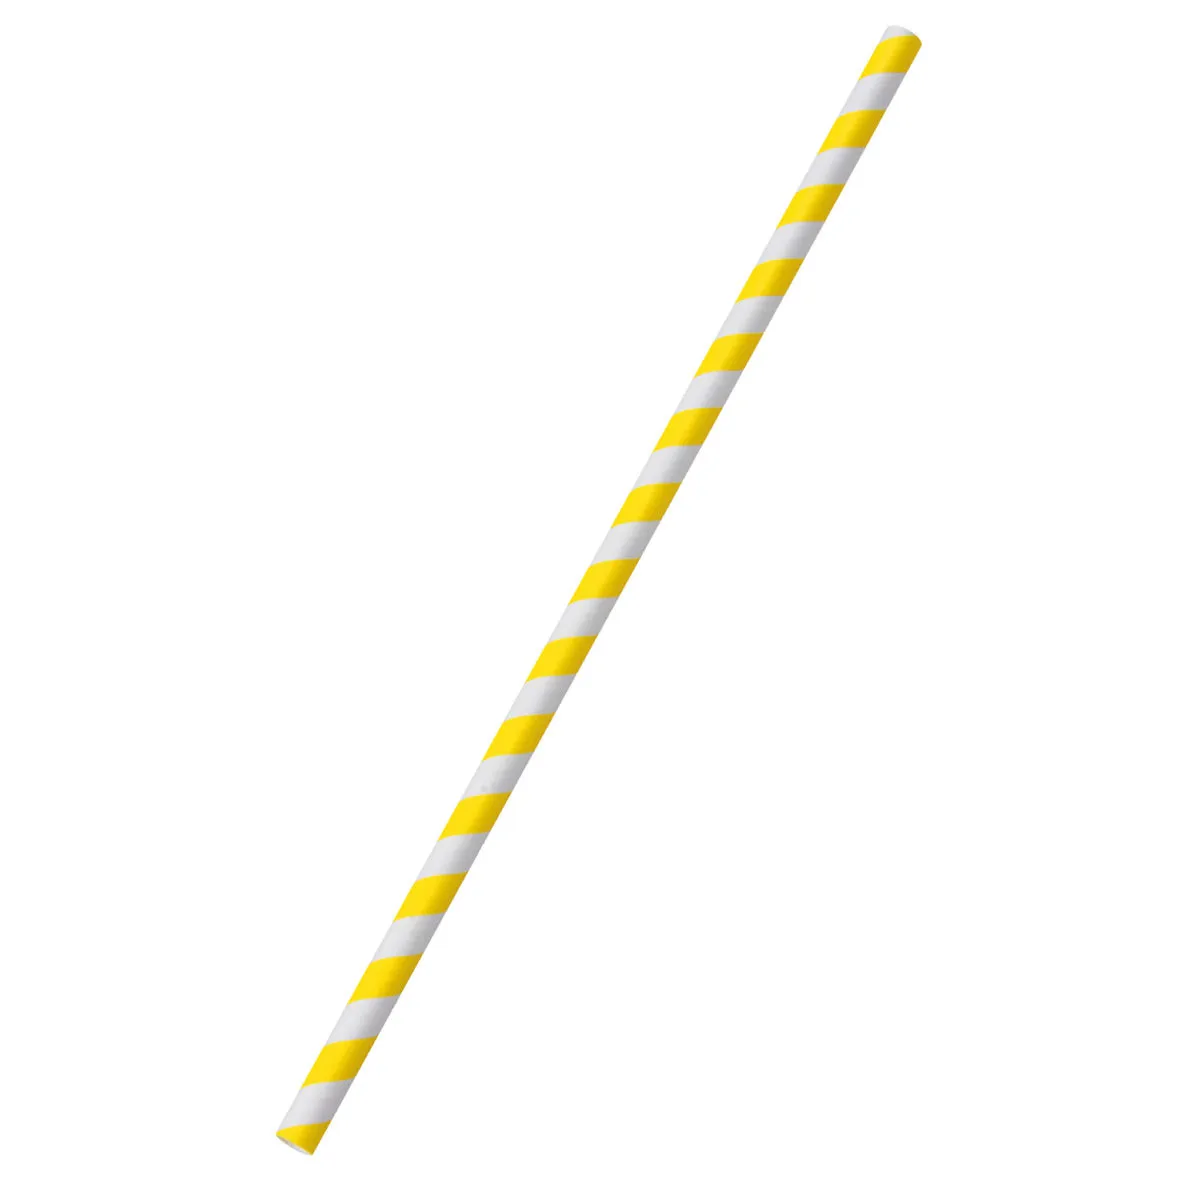 Cannuccia Spirale ; 0.8x25 cm (ØxL); giallo/bianco; 100 pz. / confezione